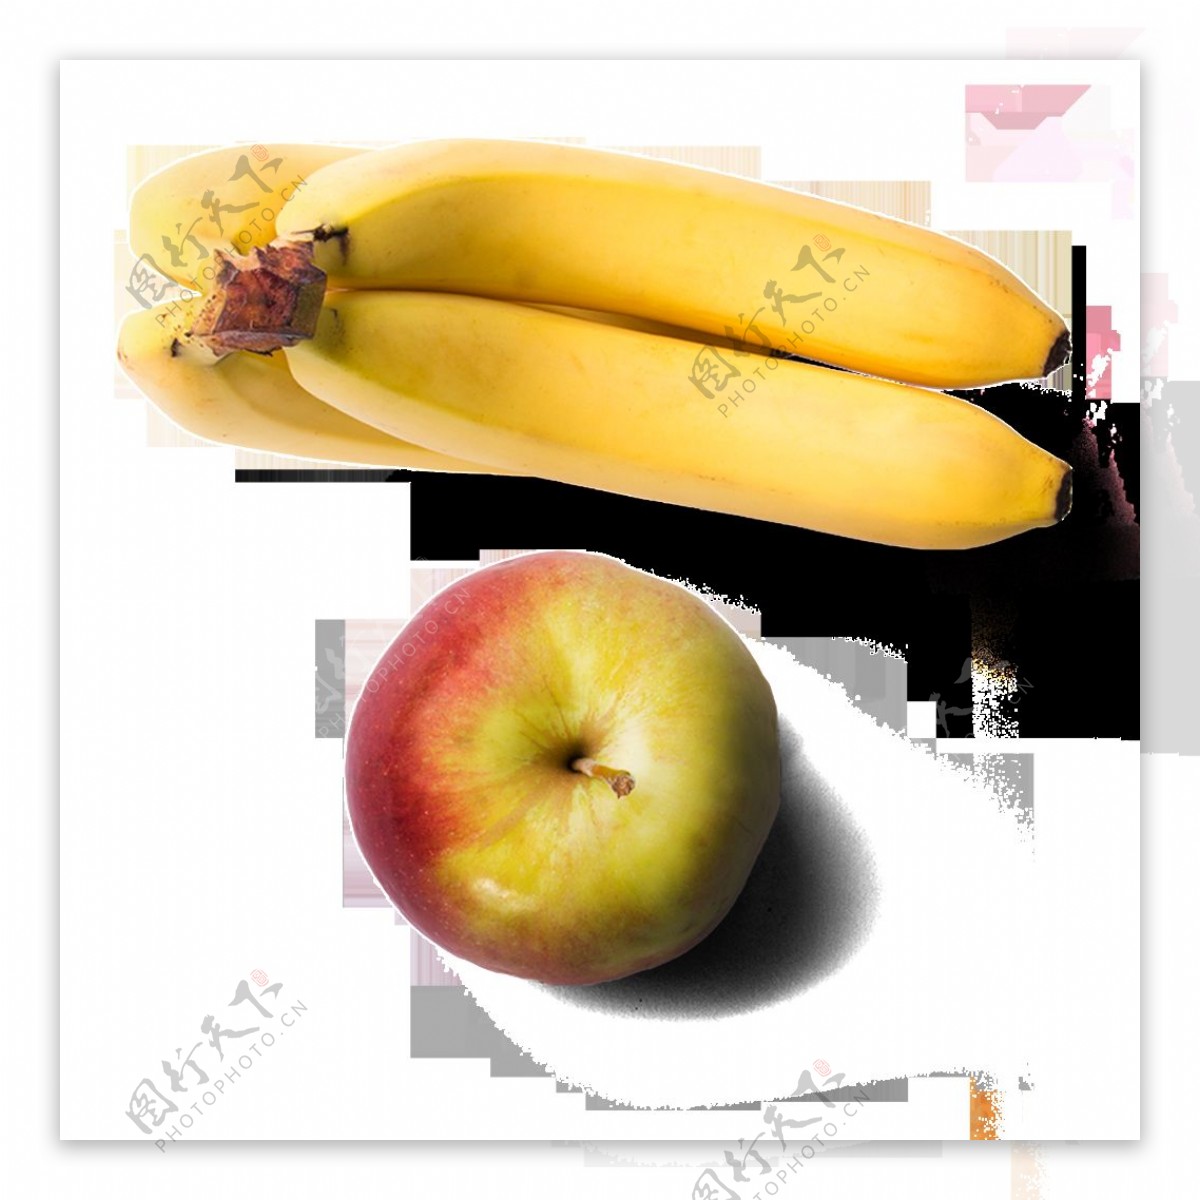 苹果和香蕉图片免费下载-5119708900-千图网Pro